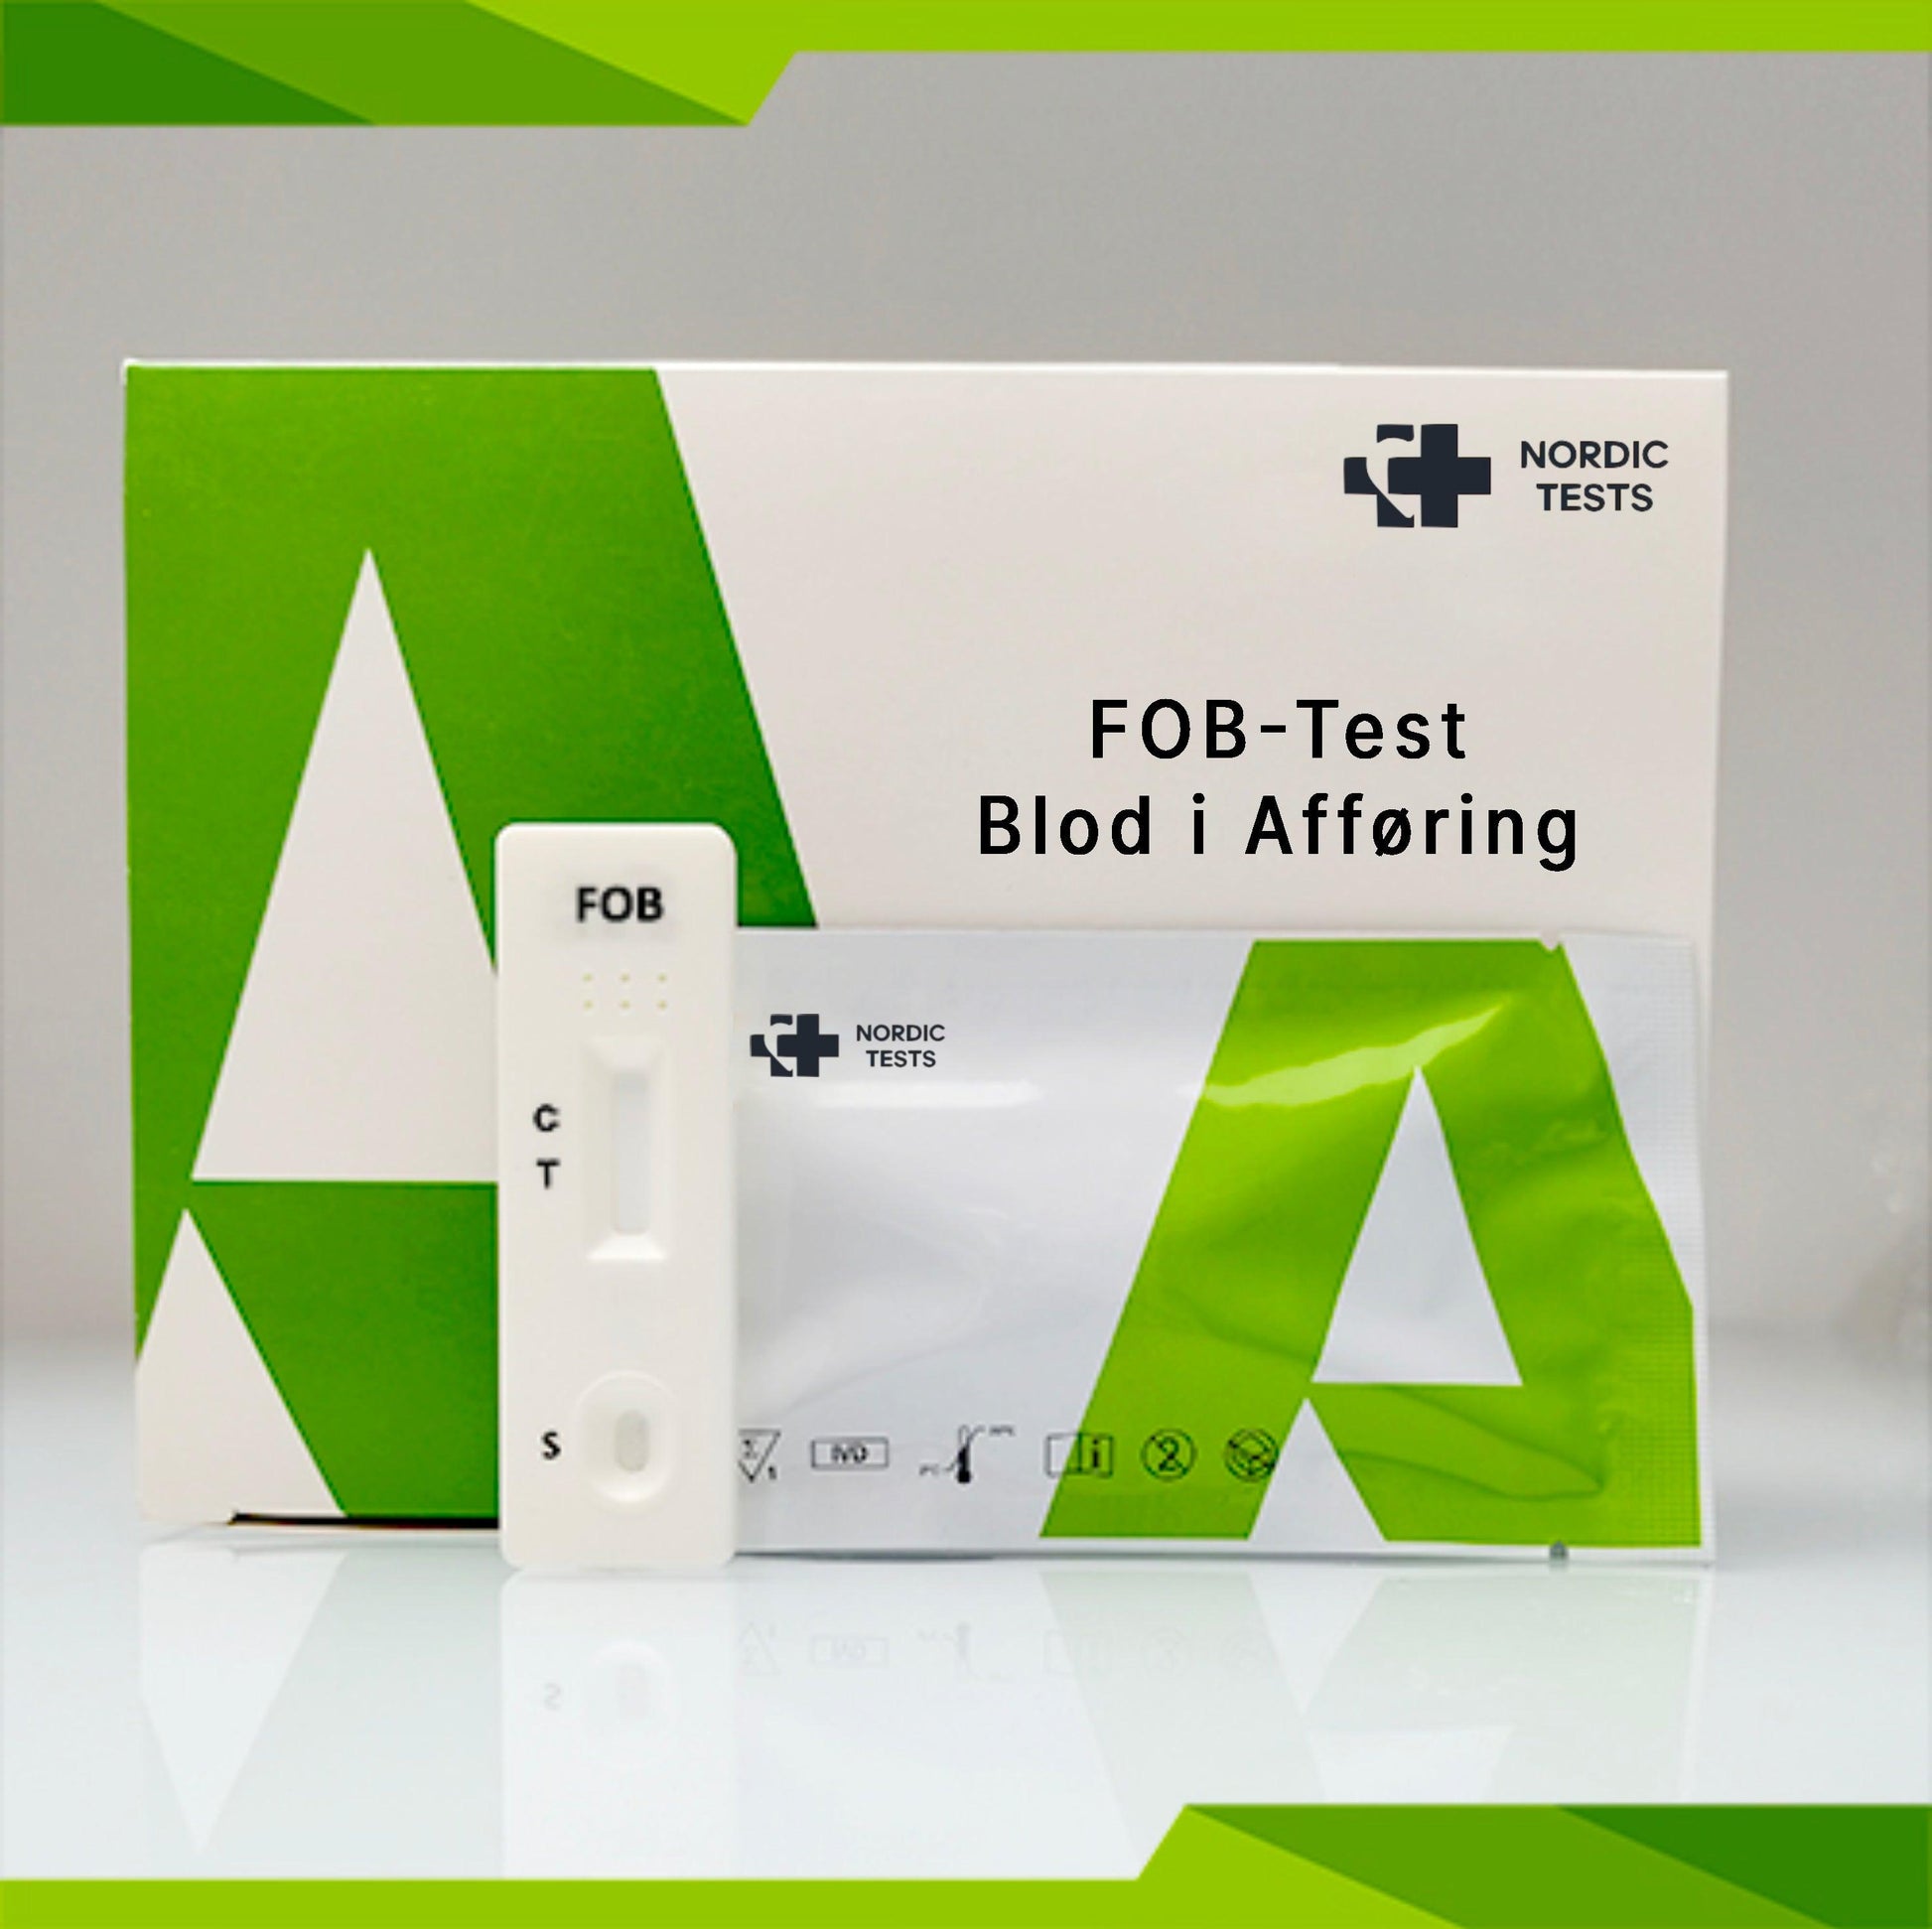 Produktbillede af en testkit for blod i afføring (FOB). Produktet er en hjemmetest.